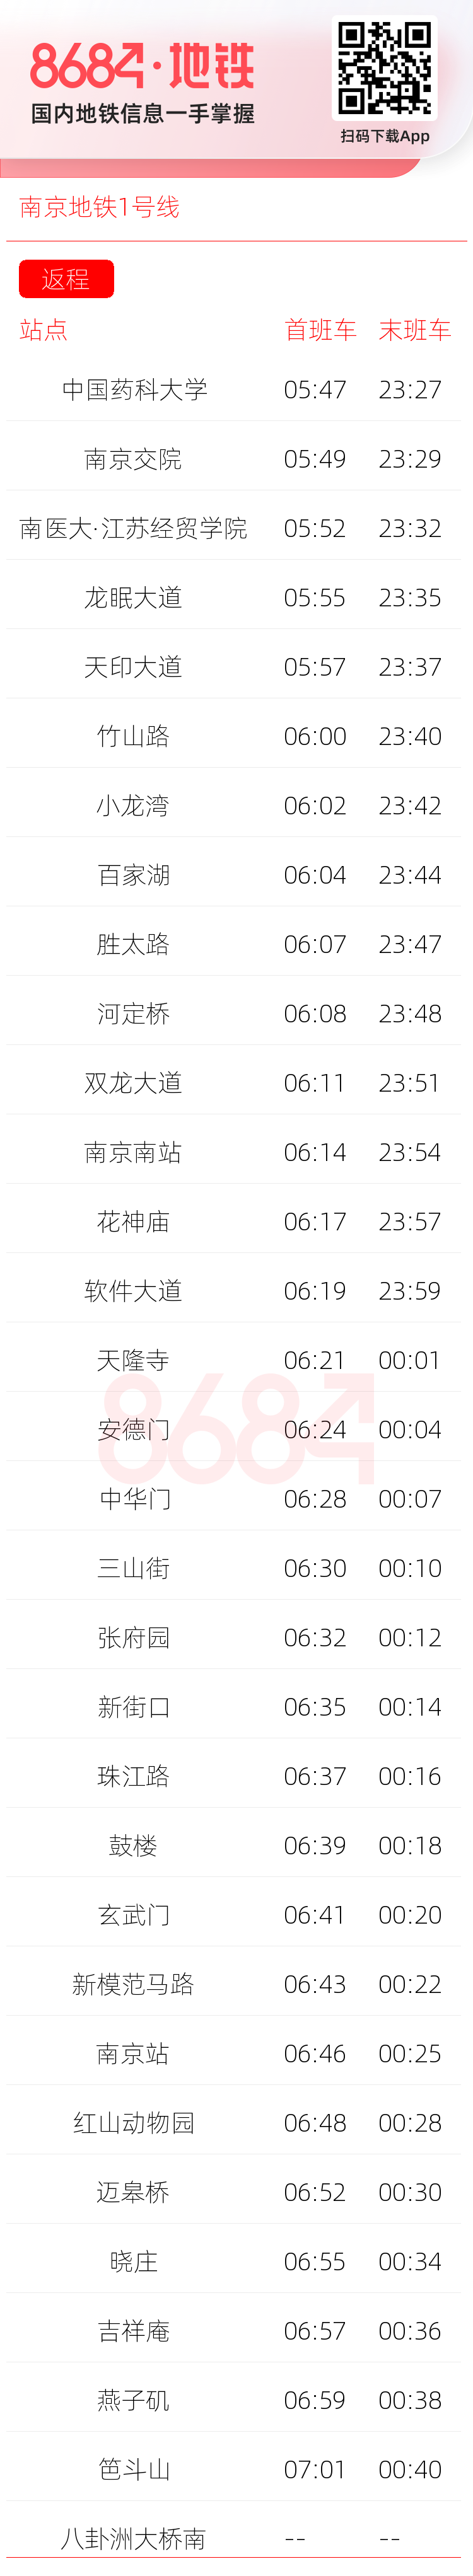 南京地铁1号线运营时间表